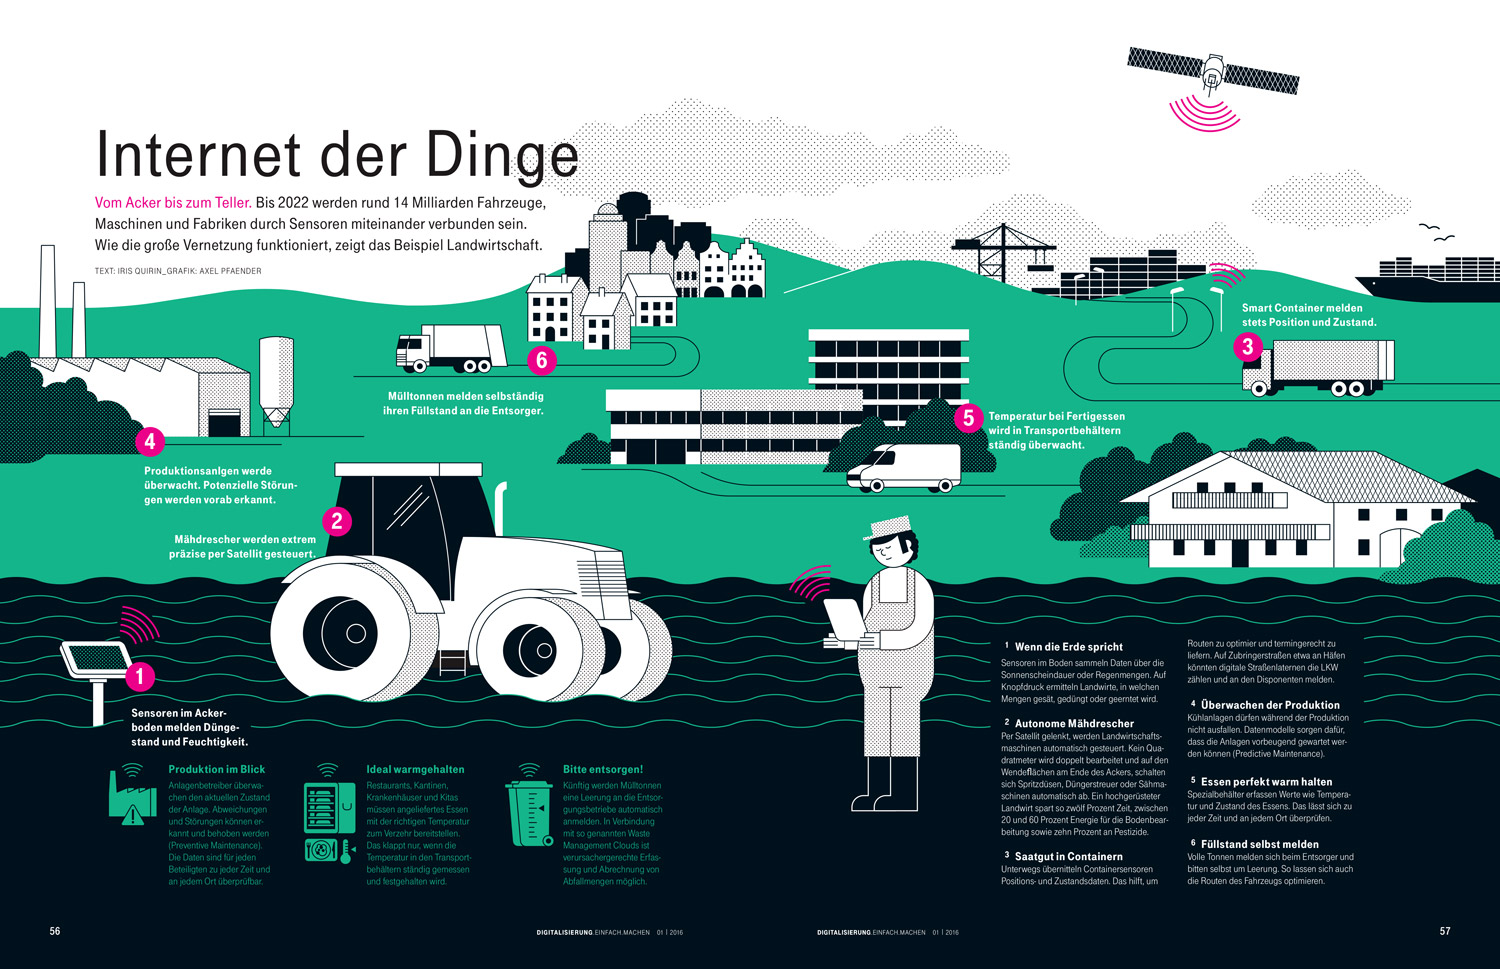 Internet der Dinge, Infografik über vernetzte Landwirtschaft, aus dem Magazin "Mittelstand - DIE MACHER" der Deutschen Telekom.